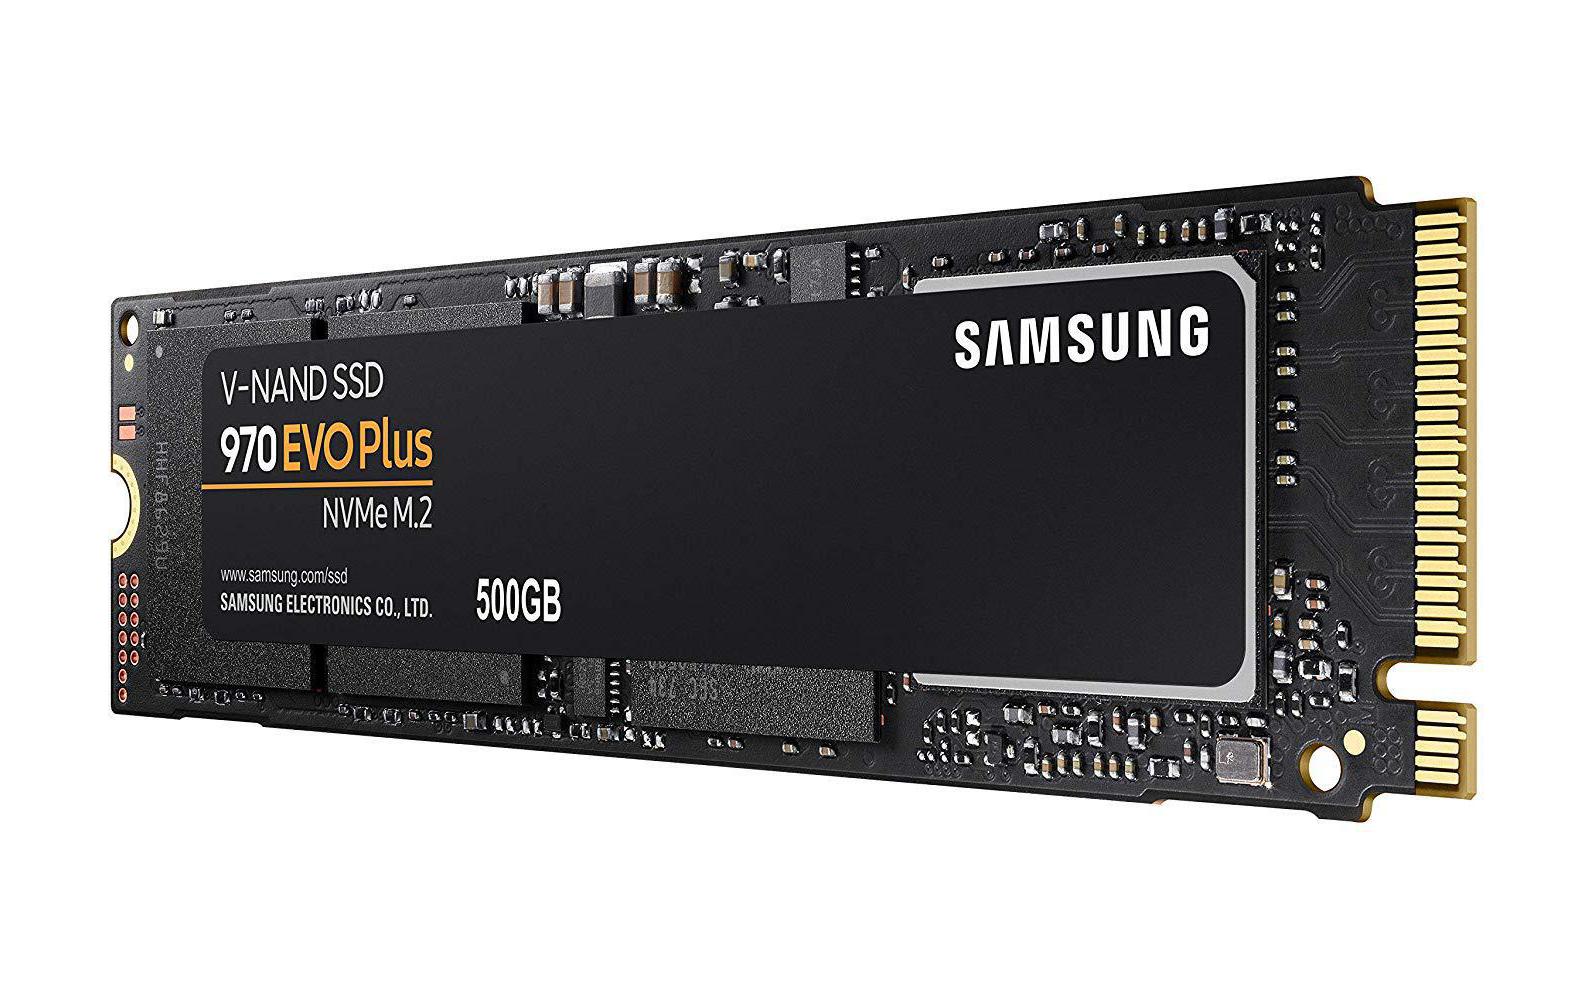 Abbildung einer SSD 970 EVO NVMe M.2 von Samsung